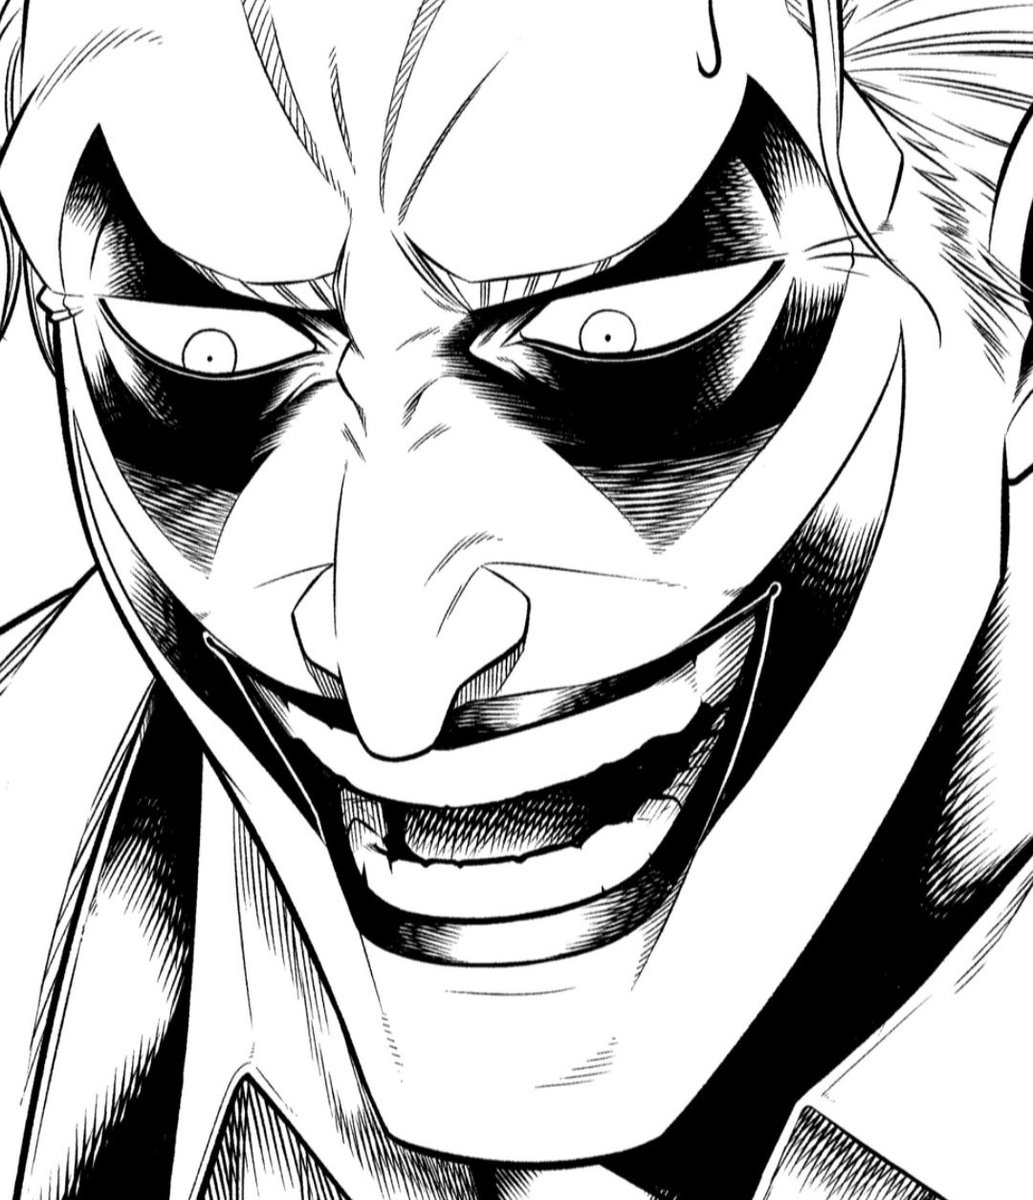 こういうベタのタッチ描いてる時が1番楽しかったりする🃏🦇

#Joker
#dccomics 